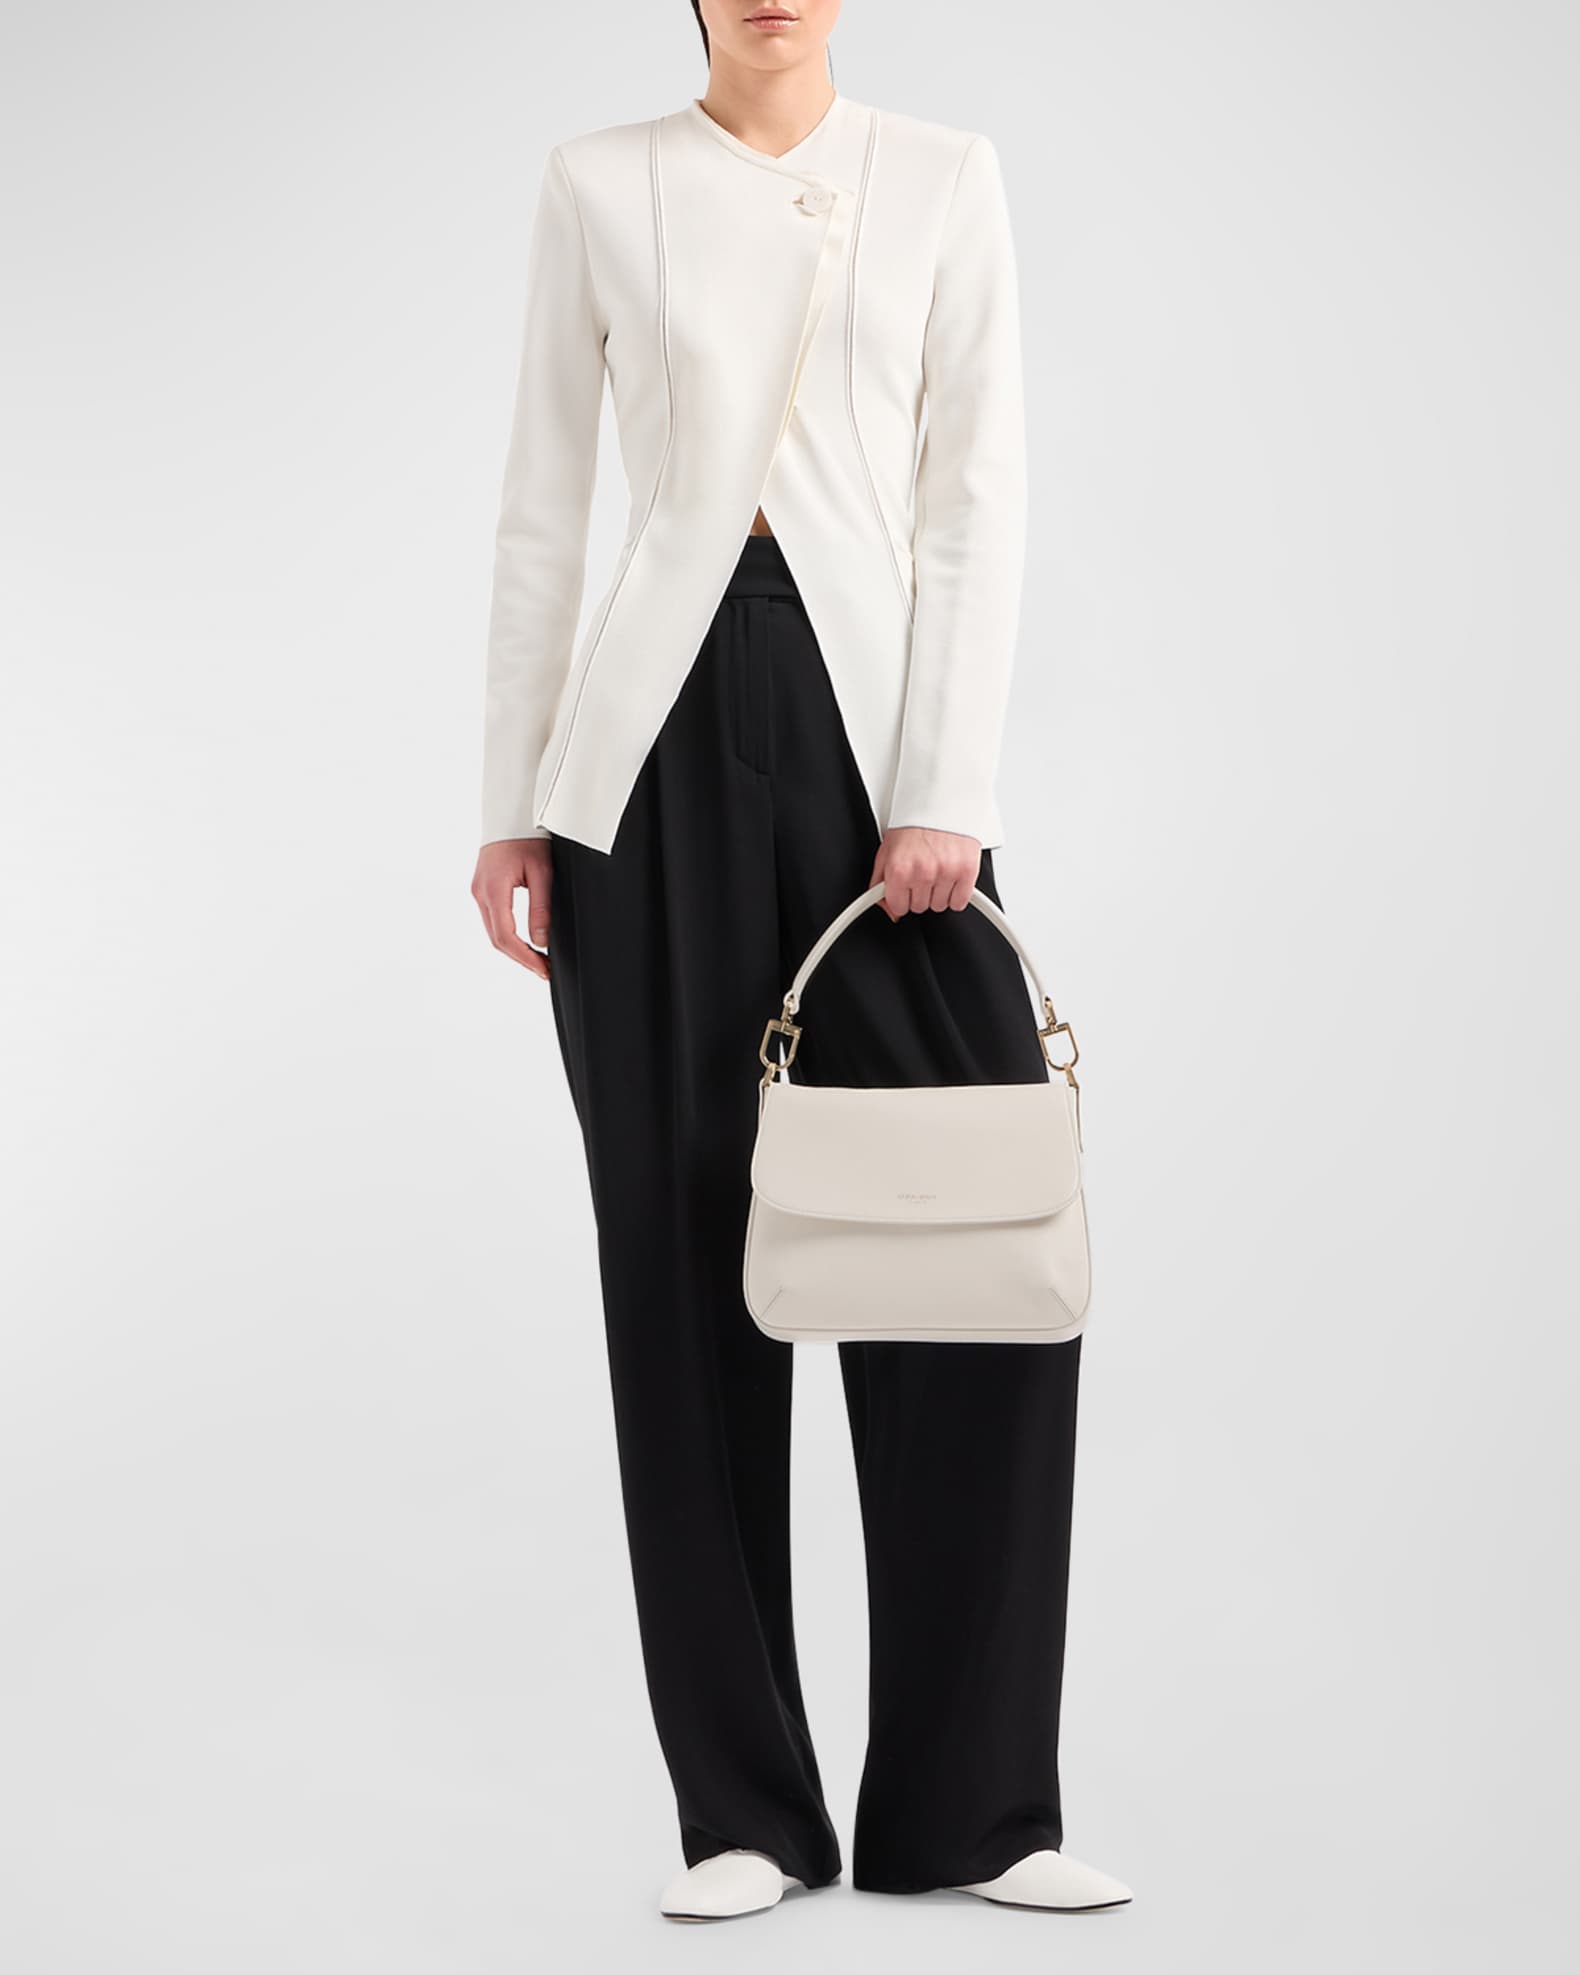 Women's Bags in Atlanta  Giorgio Armani Donna Atlanta Neiman Marcus